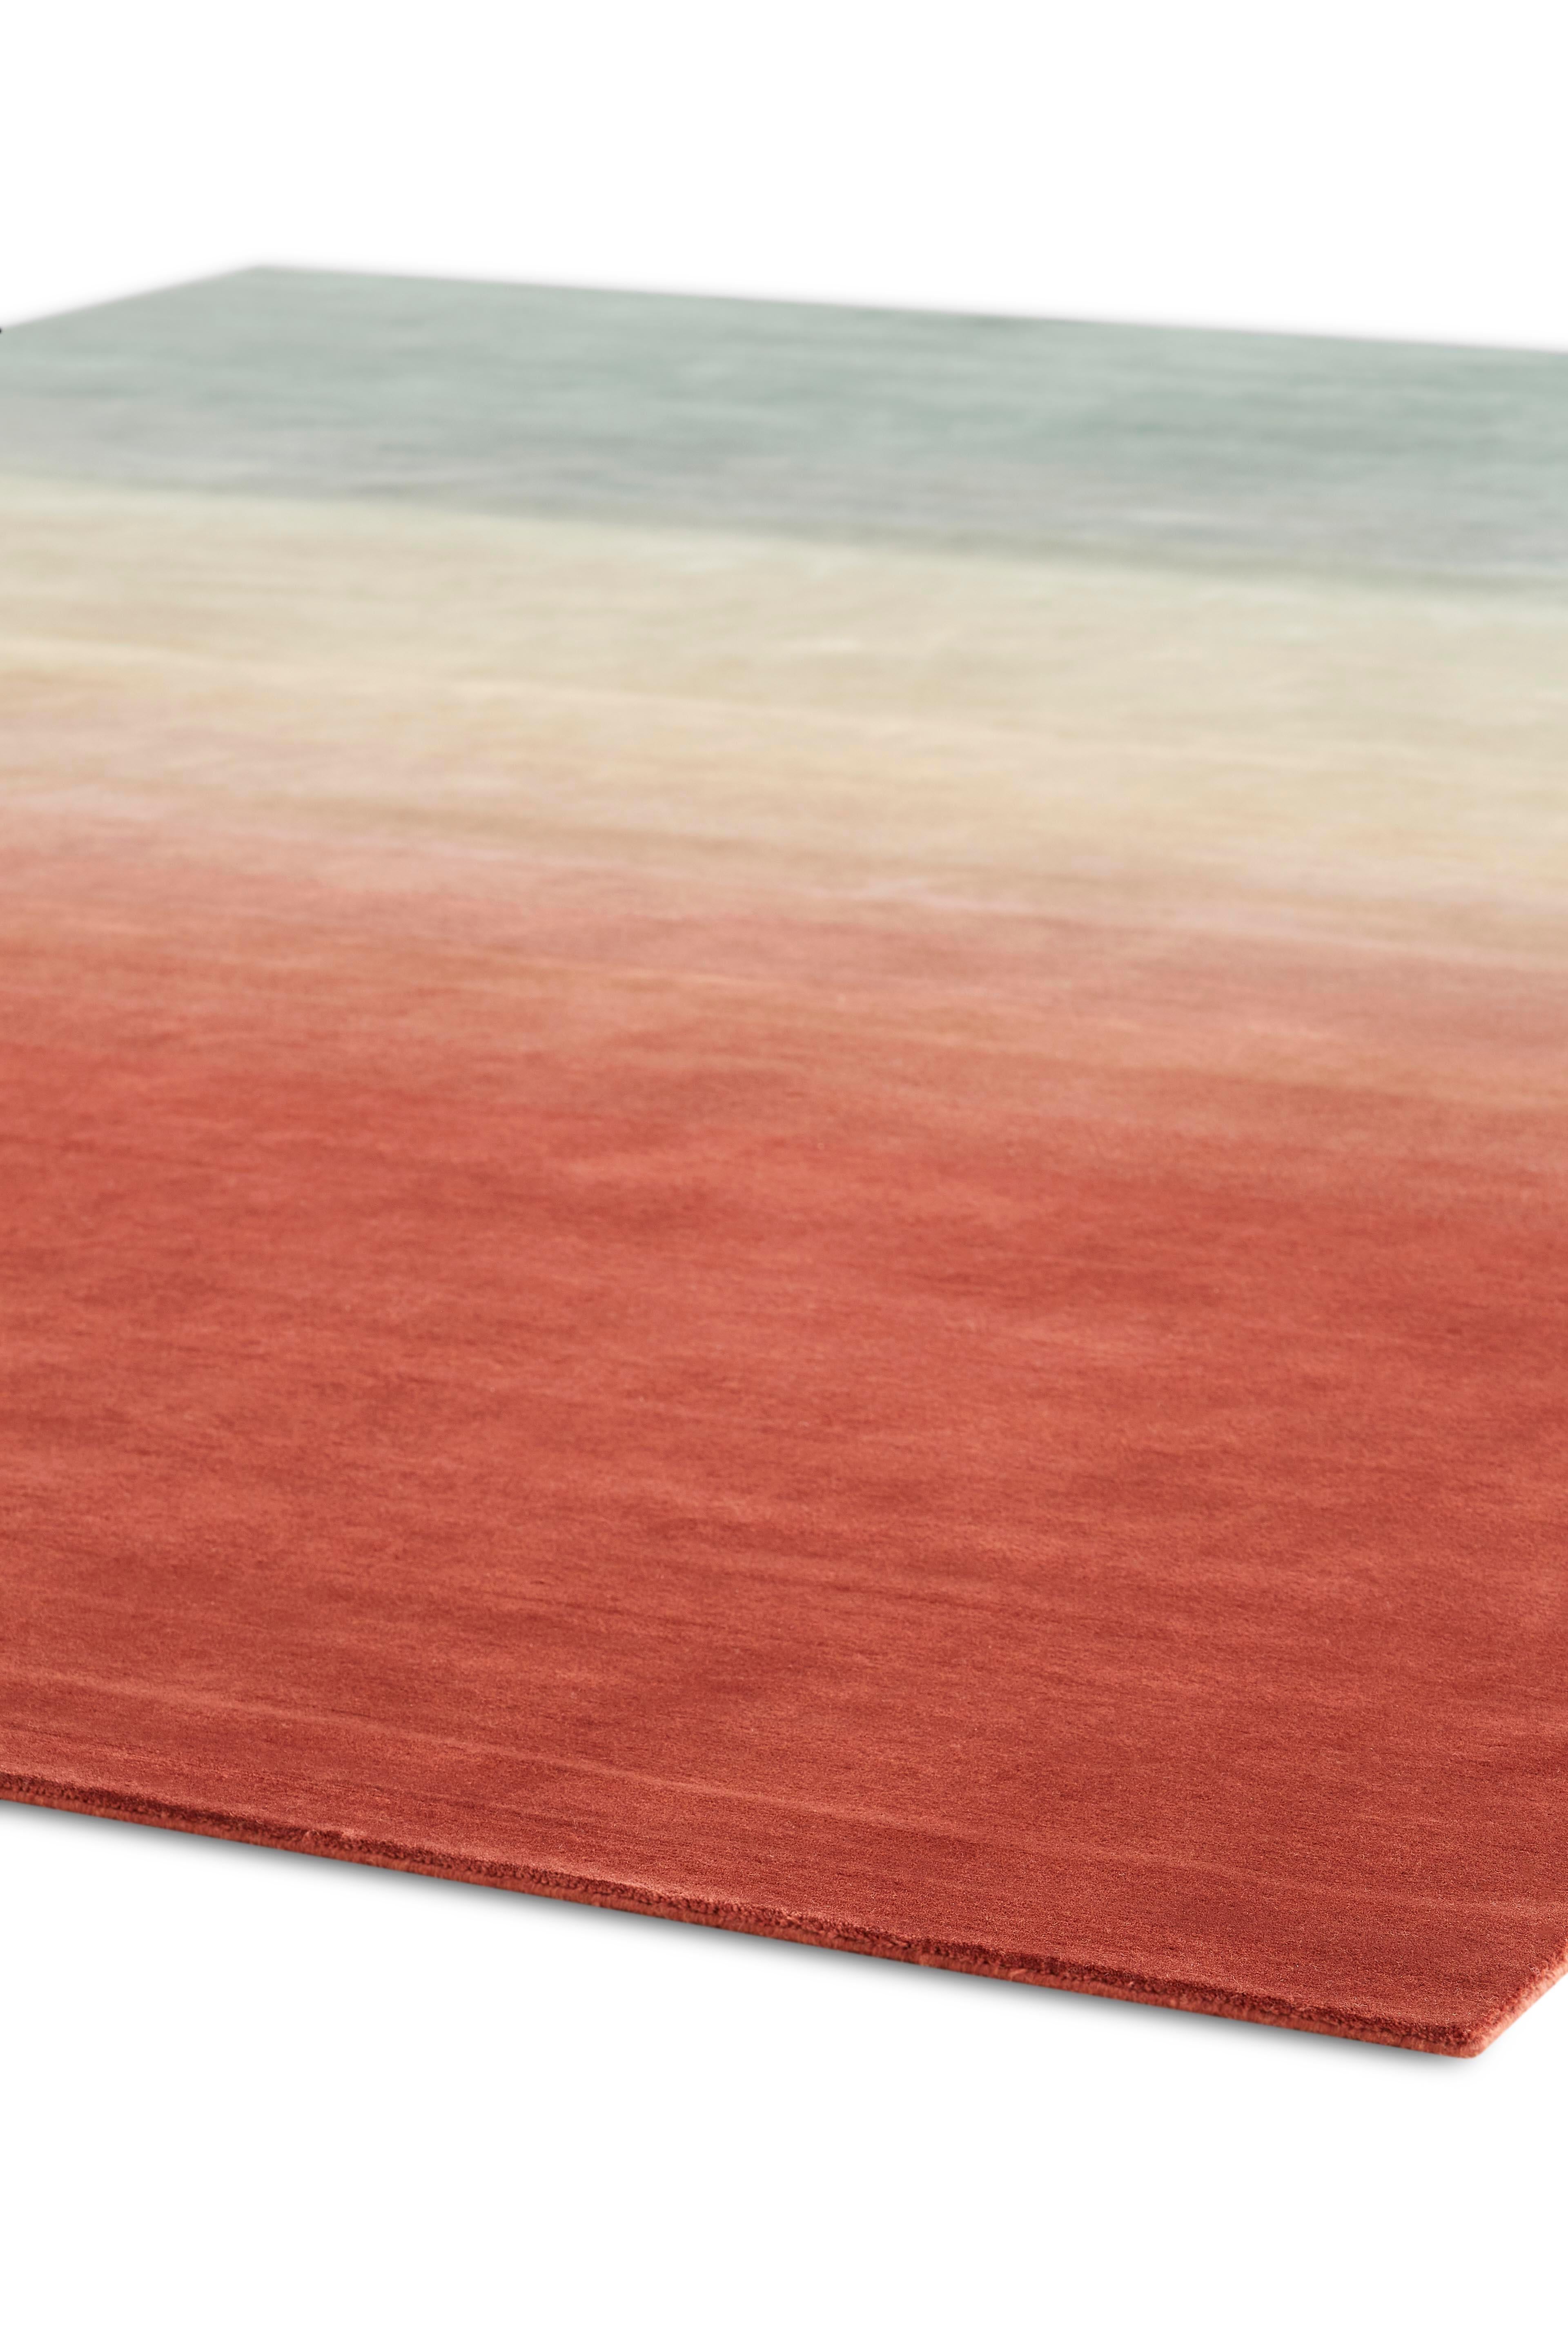 Degrade est la dernière contribution de Patricia Urquiola à la collection de tapis noués à la main du GAN. Sobres et élégants, ces tapis jouent avec la couleur et les tons intermédiaires, démontrant le savoir-faire qui caractérise le designer. Les